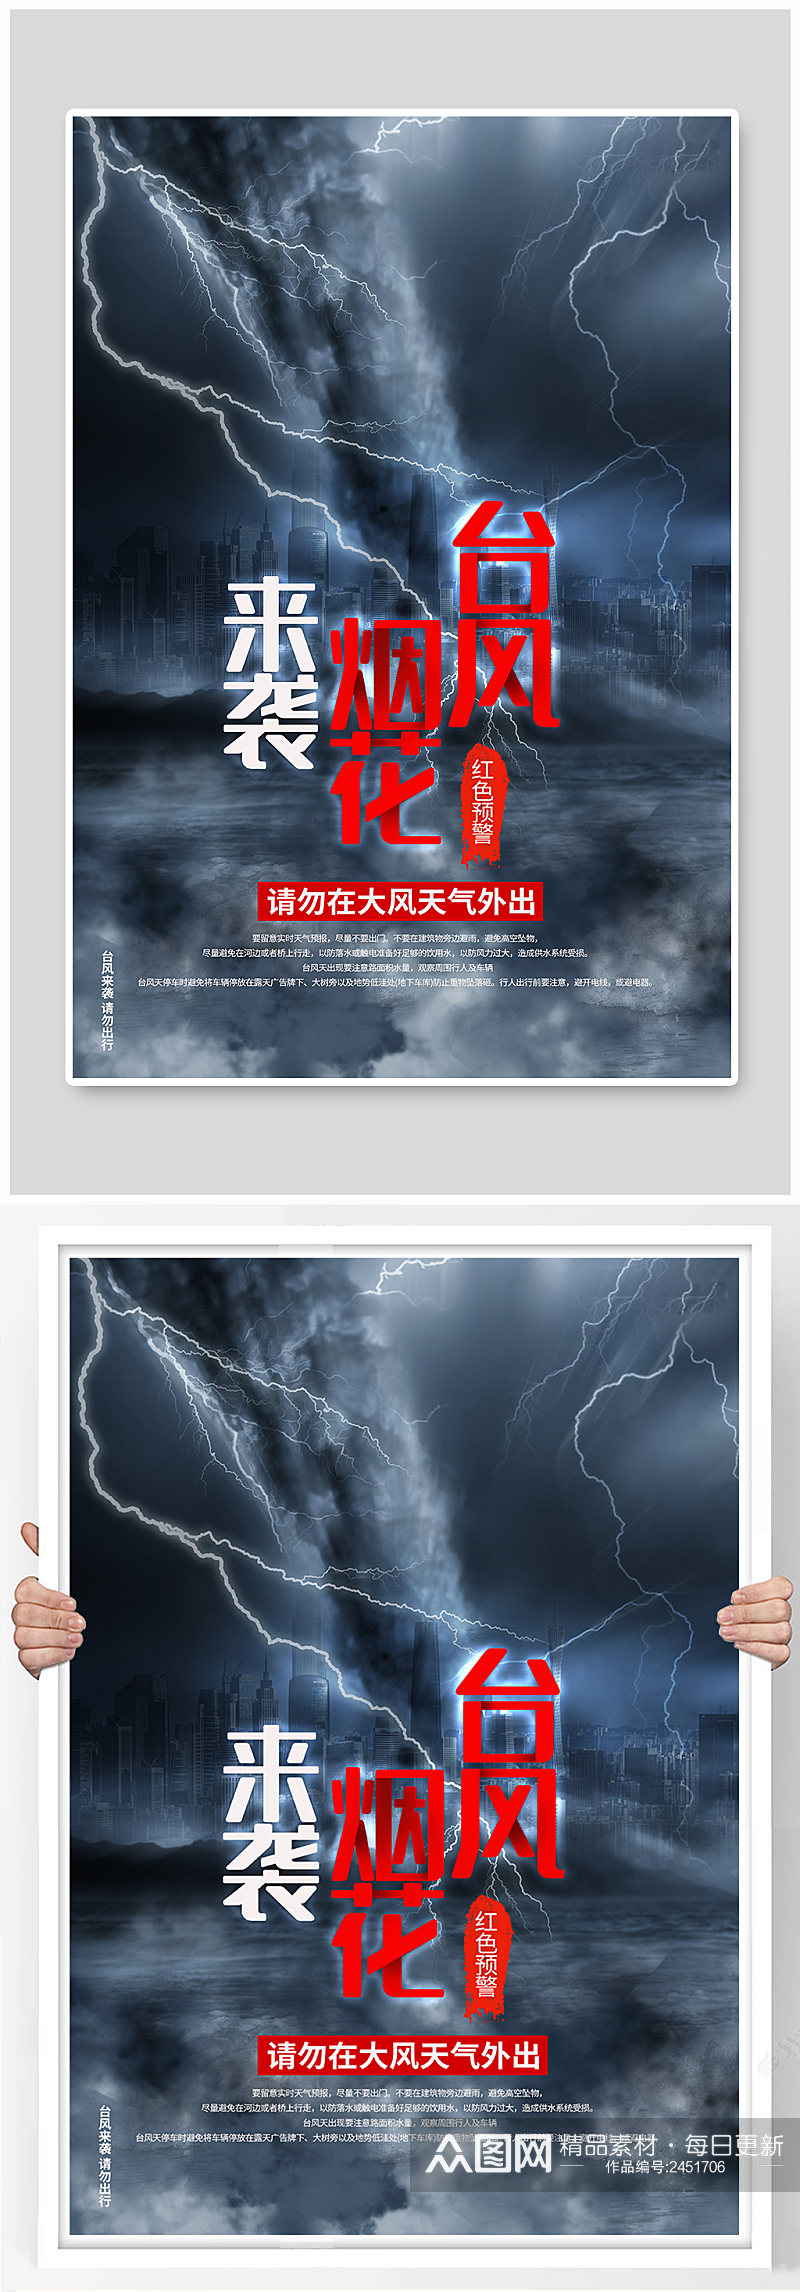 台风烟花来袭台风预警公益宣传海报素材